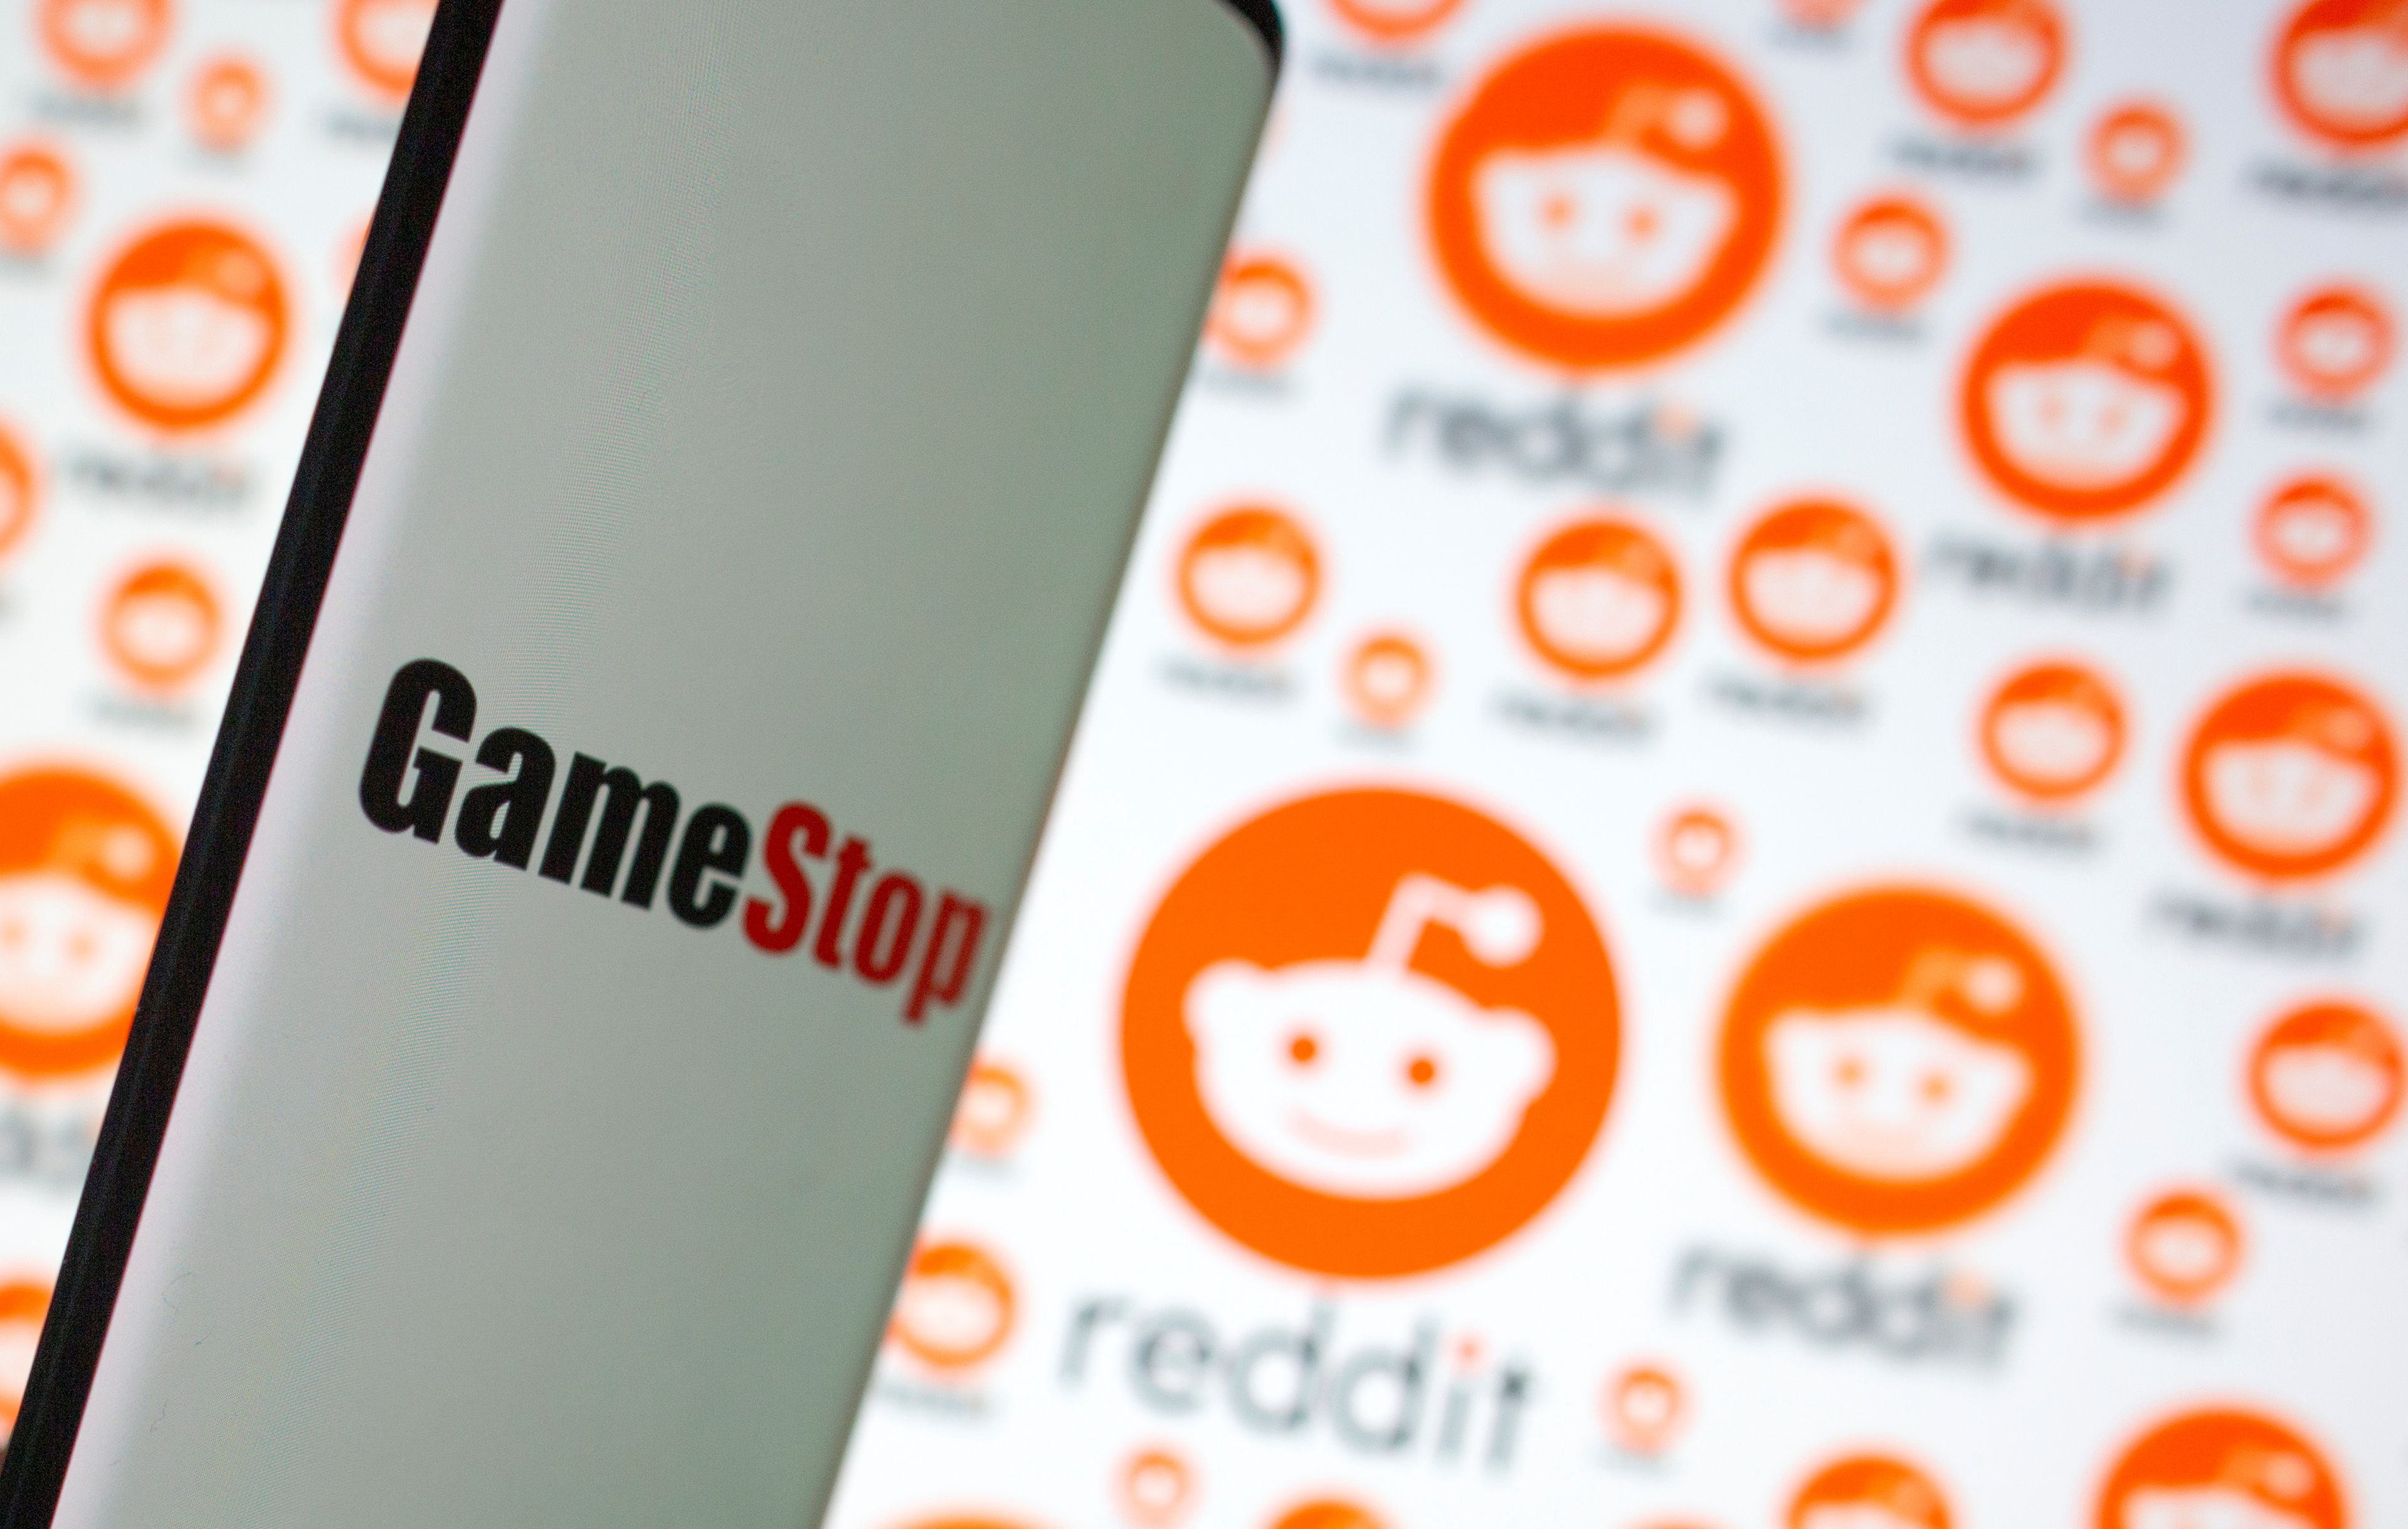 Reddit convierte las acciones de GameStop en un meme